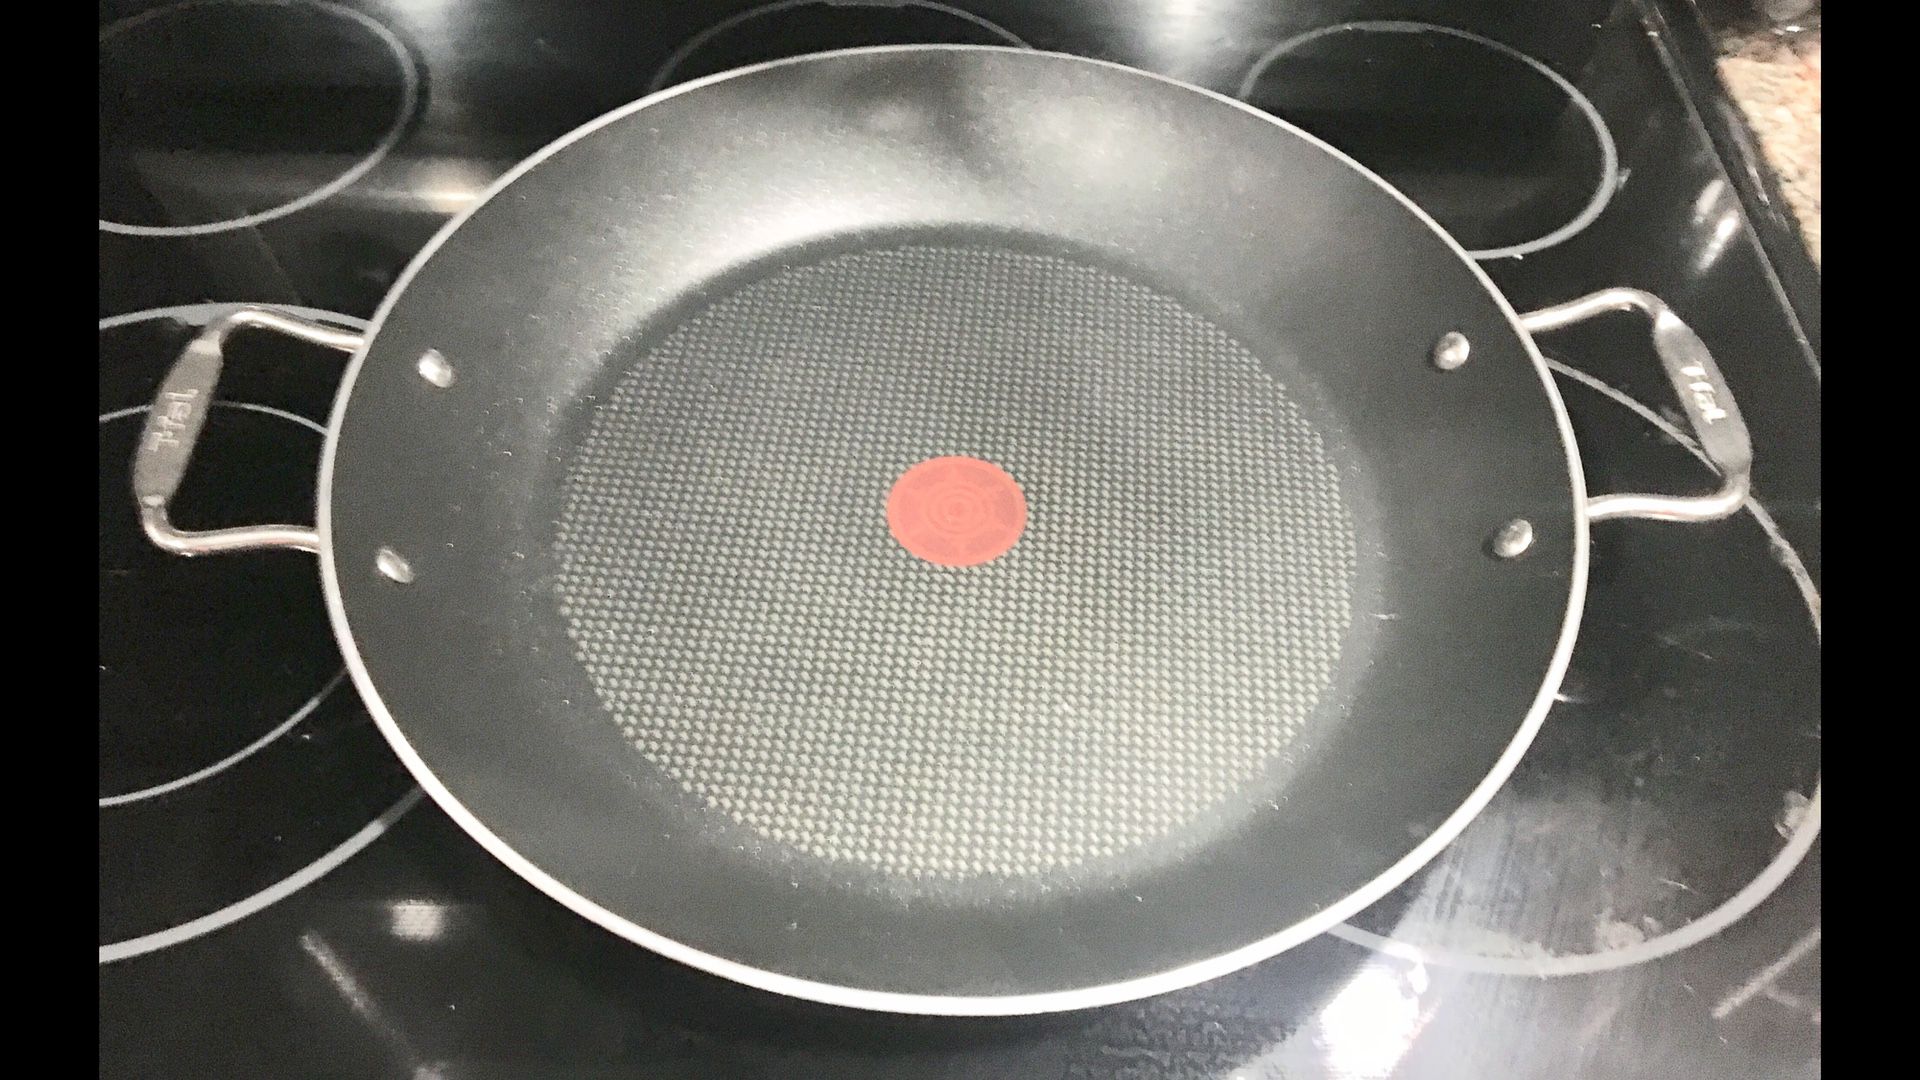 New TFAL Large Wok Cooking Pan